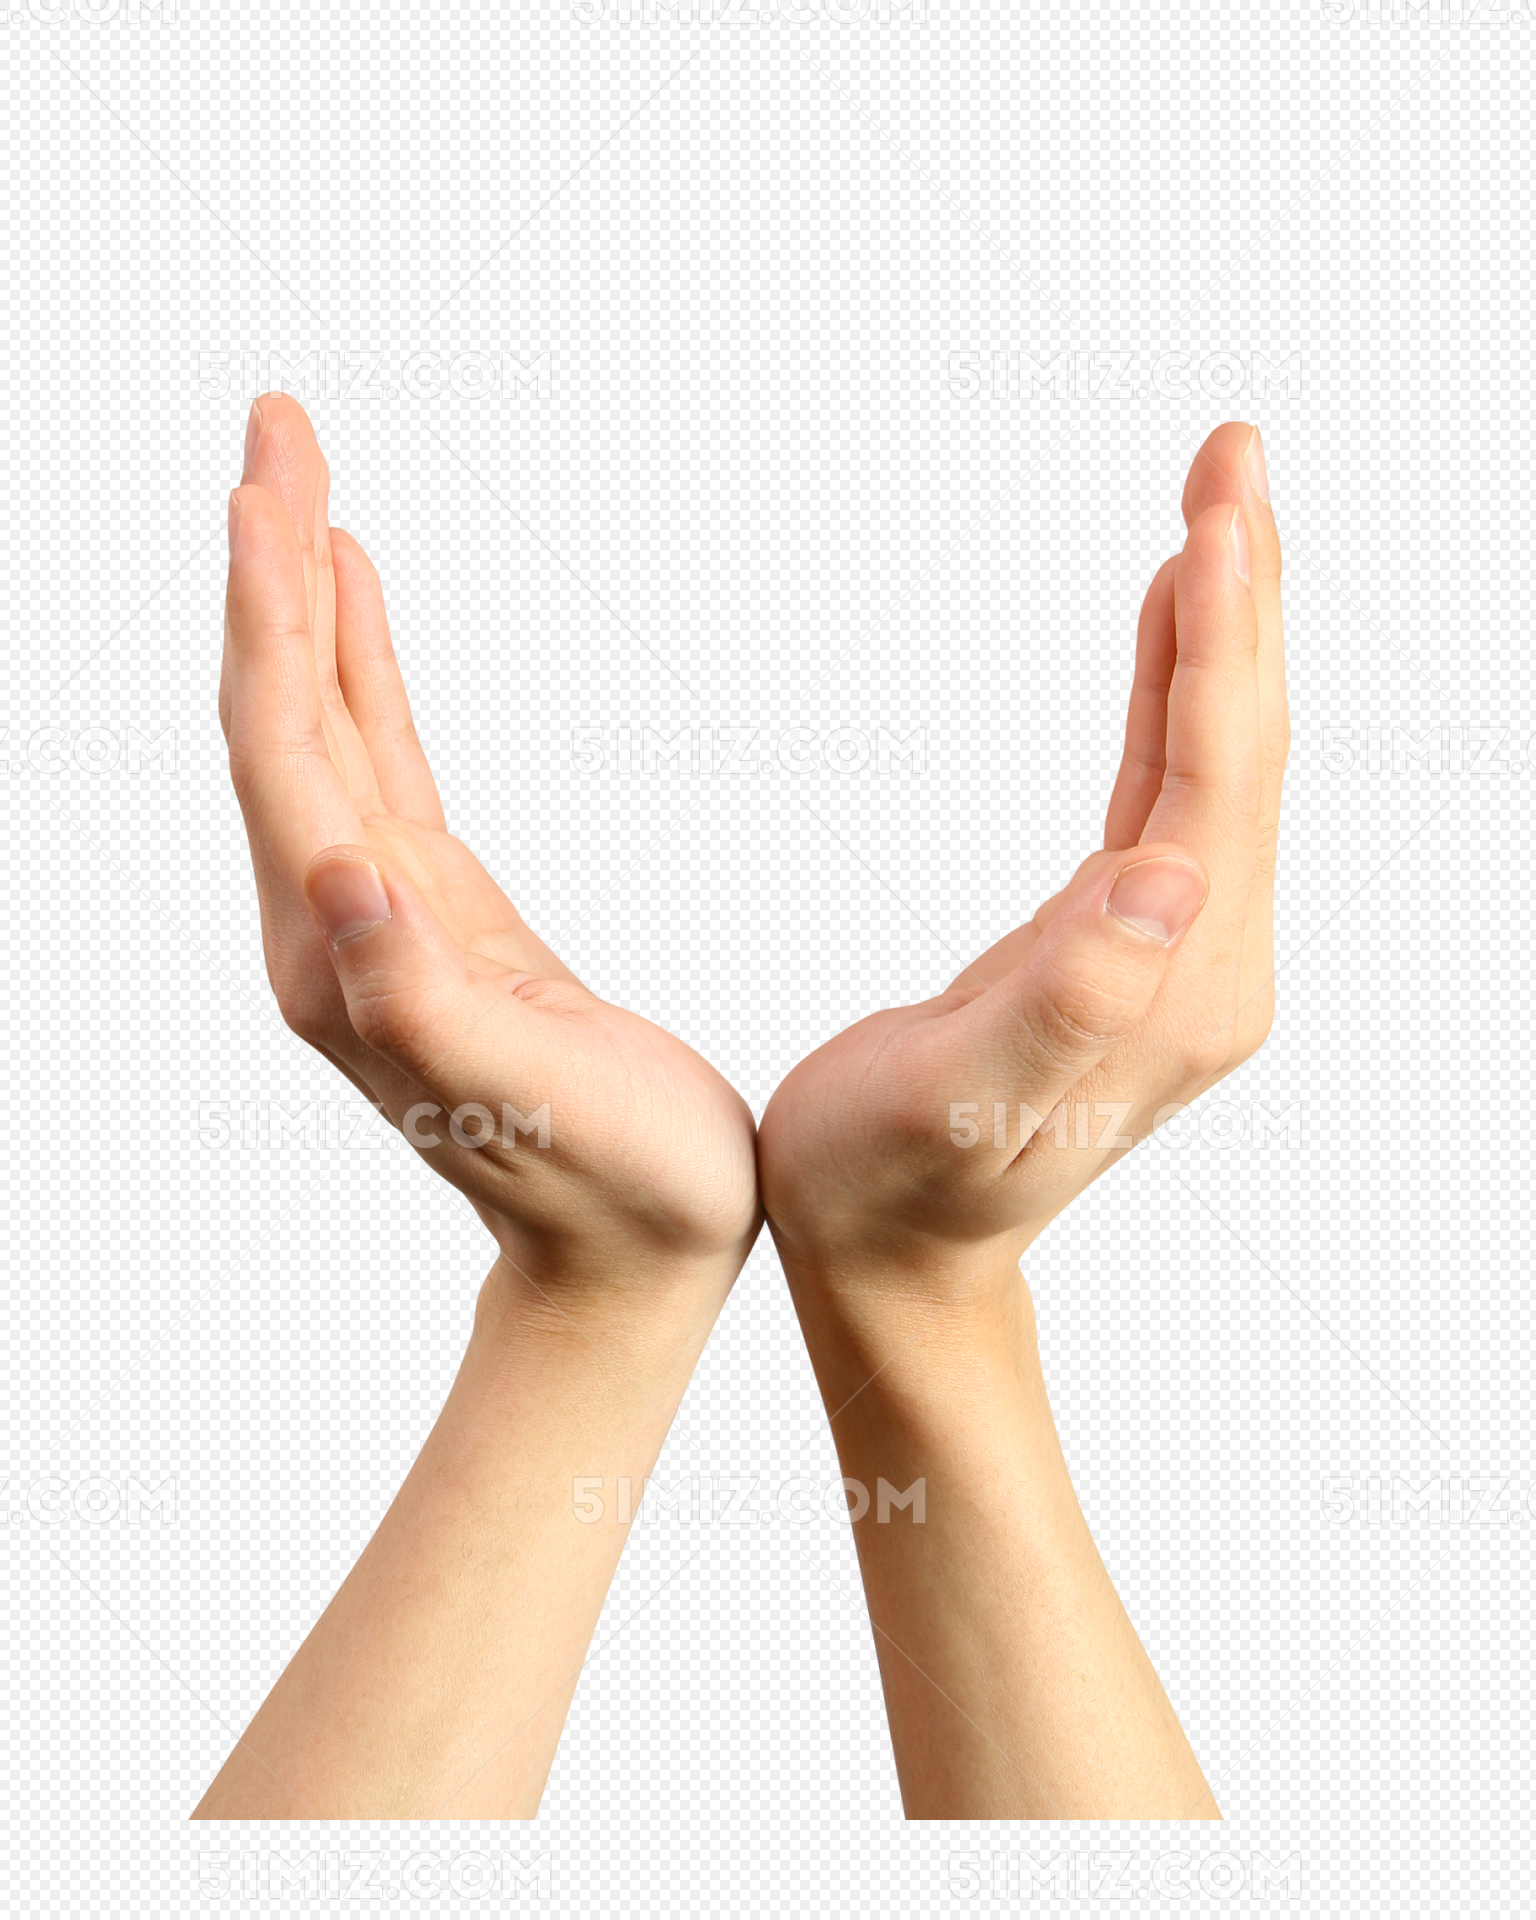 简单手语手势图解,手势的含义带图 - 伤感说说吧